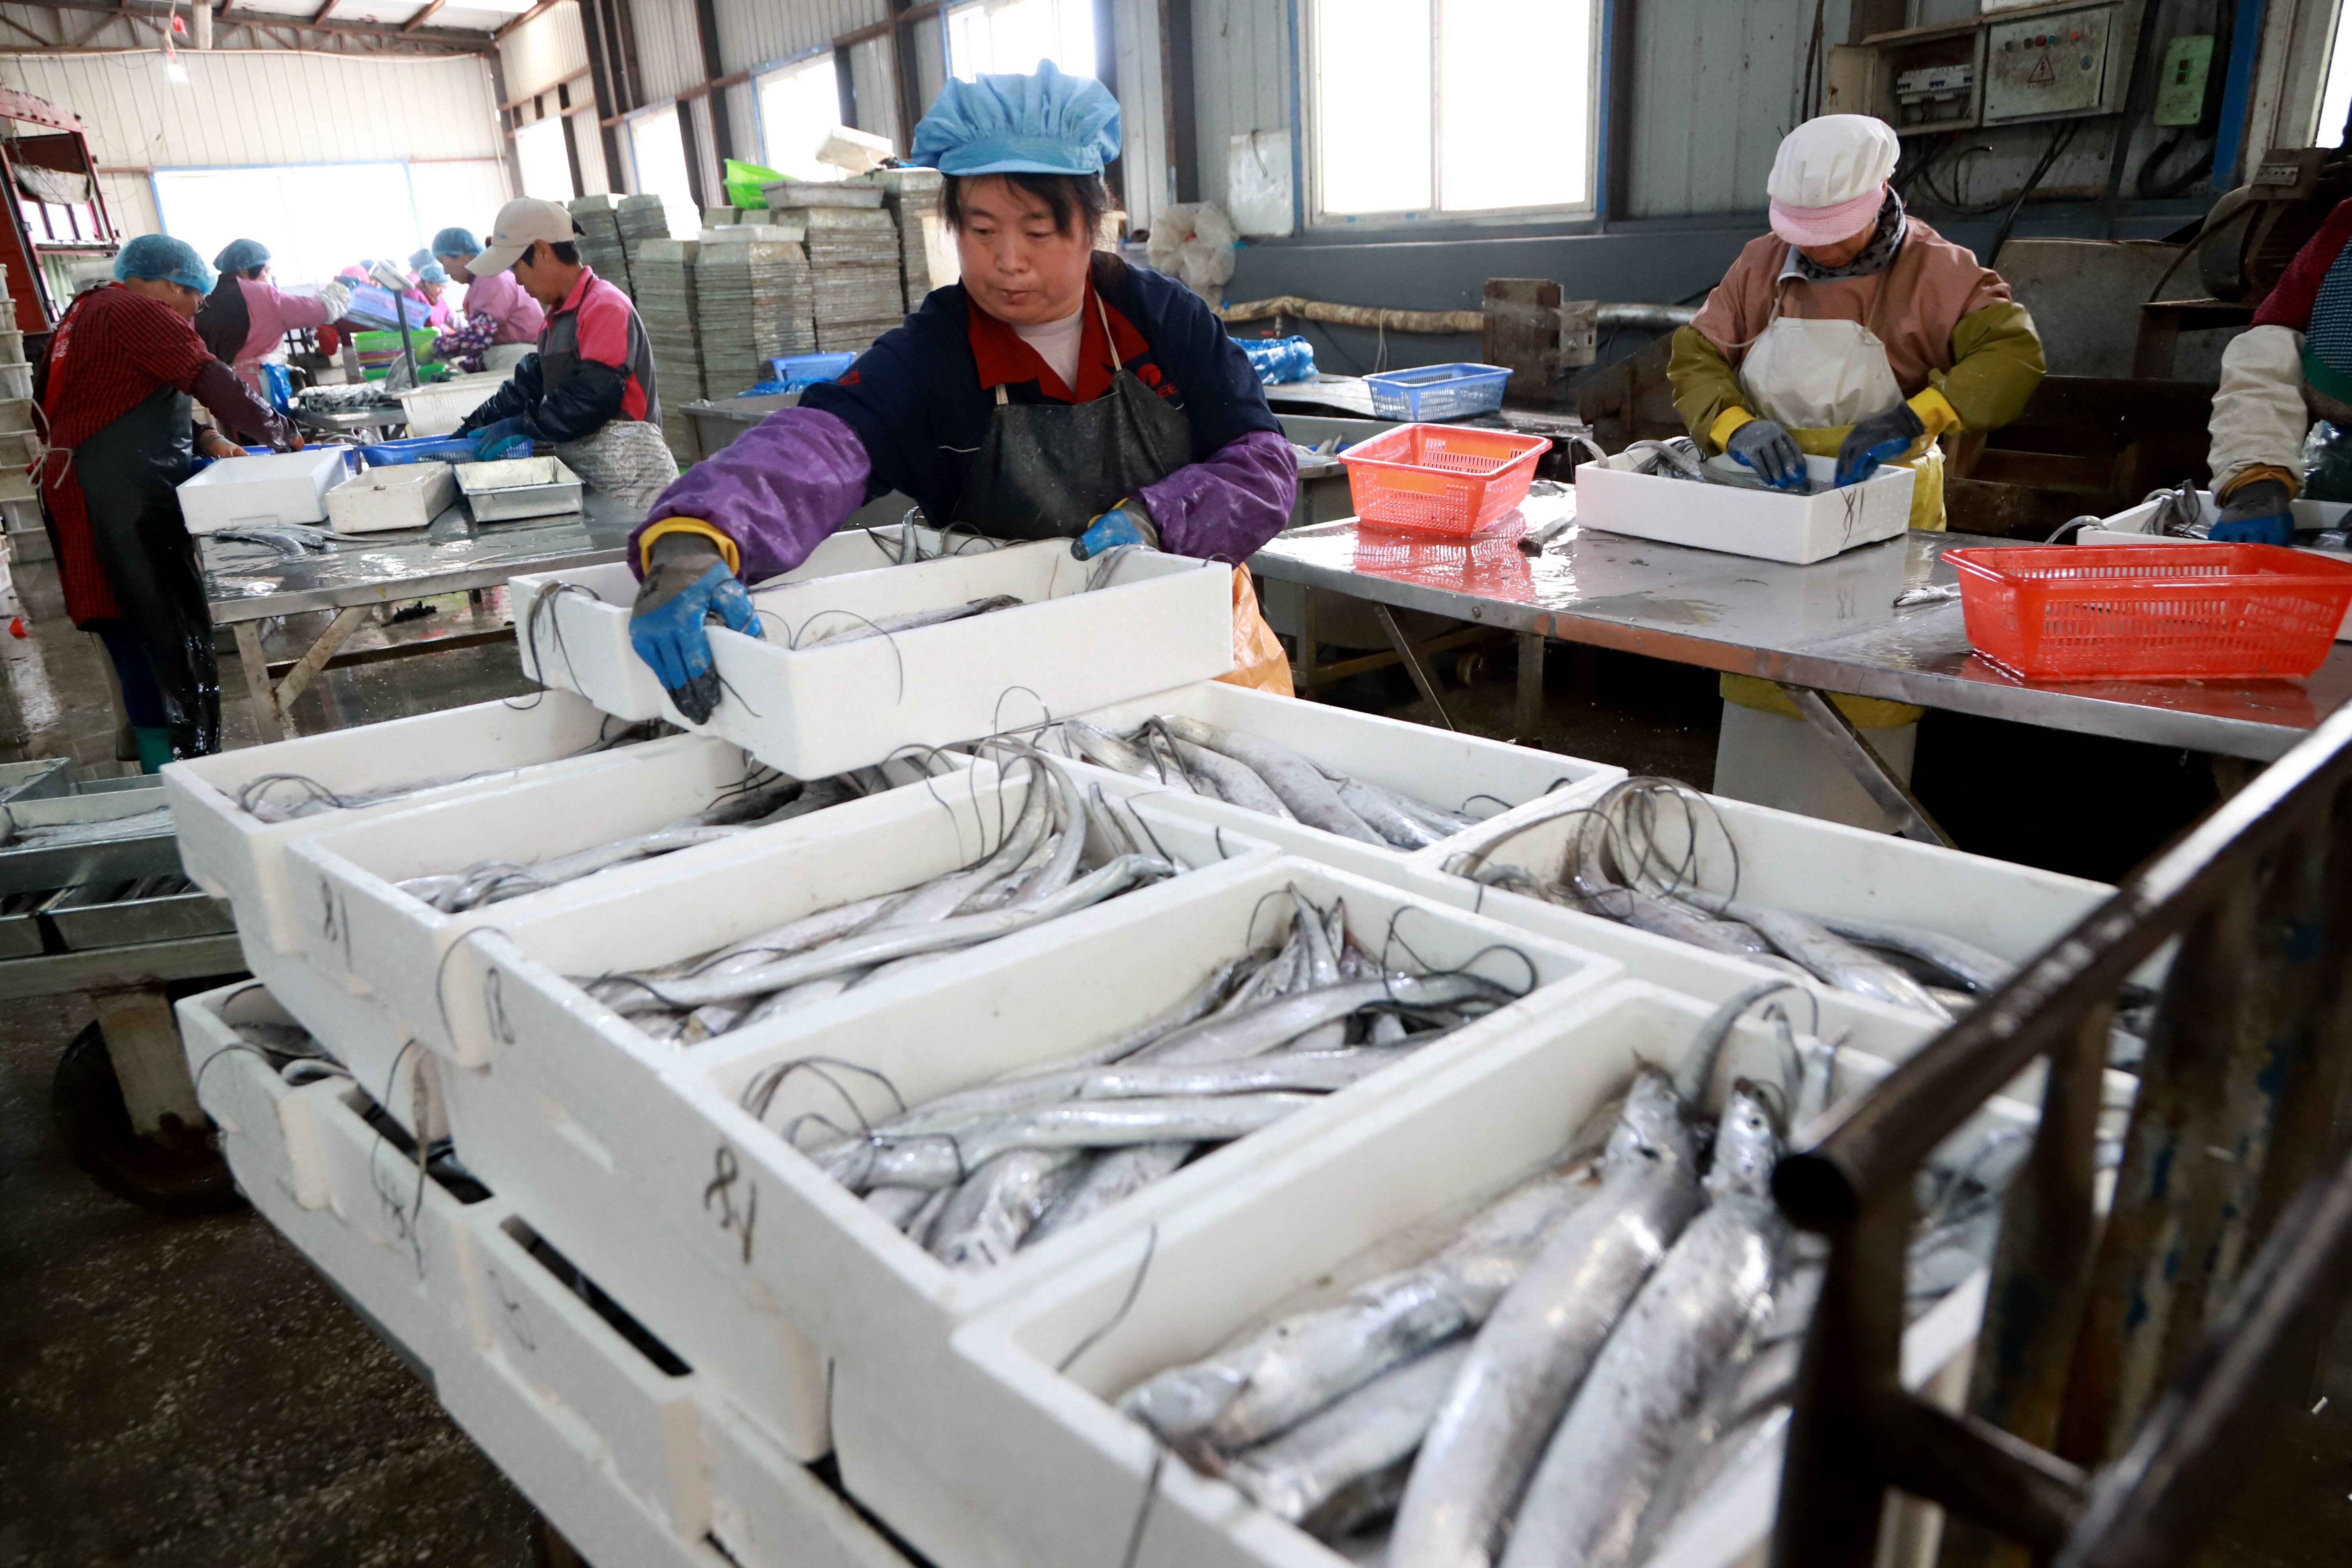 信一方水产工人在车间对新鲜带鱼进行整理装盒。记者 王培珂 报道